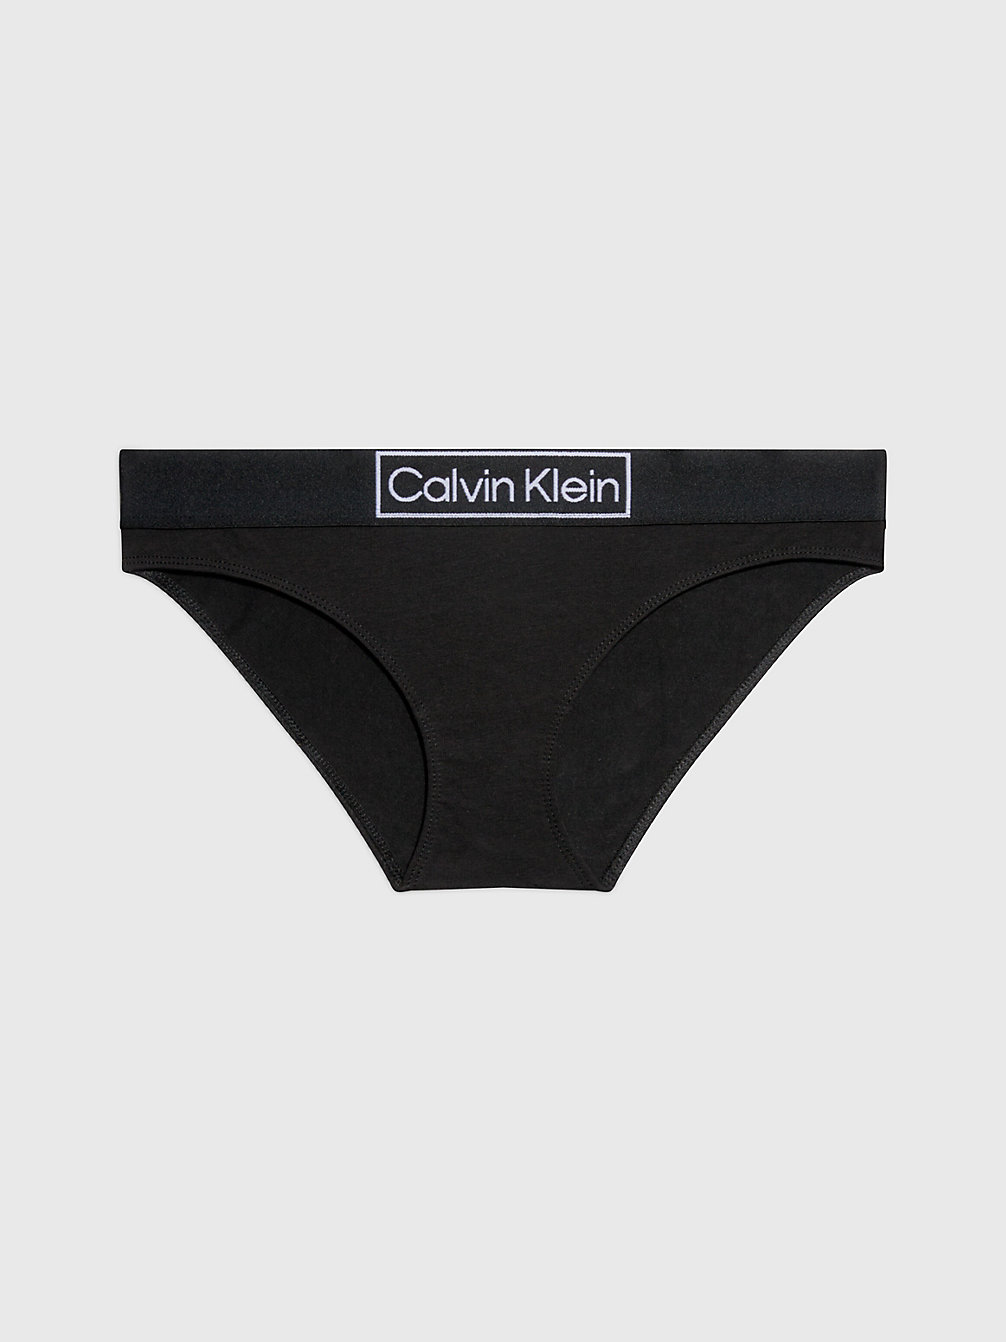 BLACK > Slips - Reimagined Heritage > undefined Damen - Calvin Klein